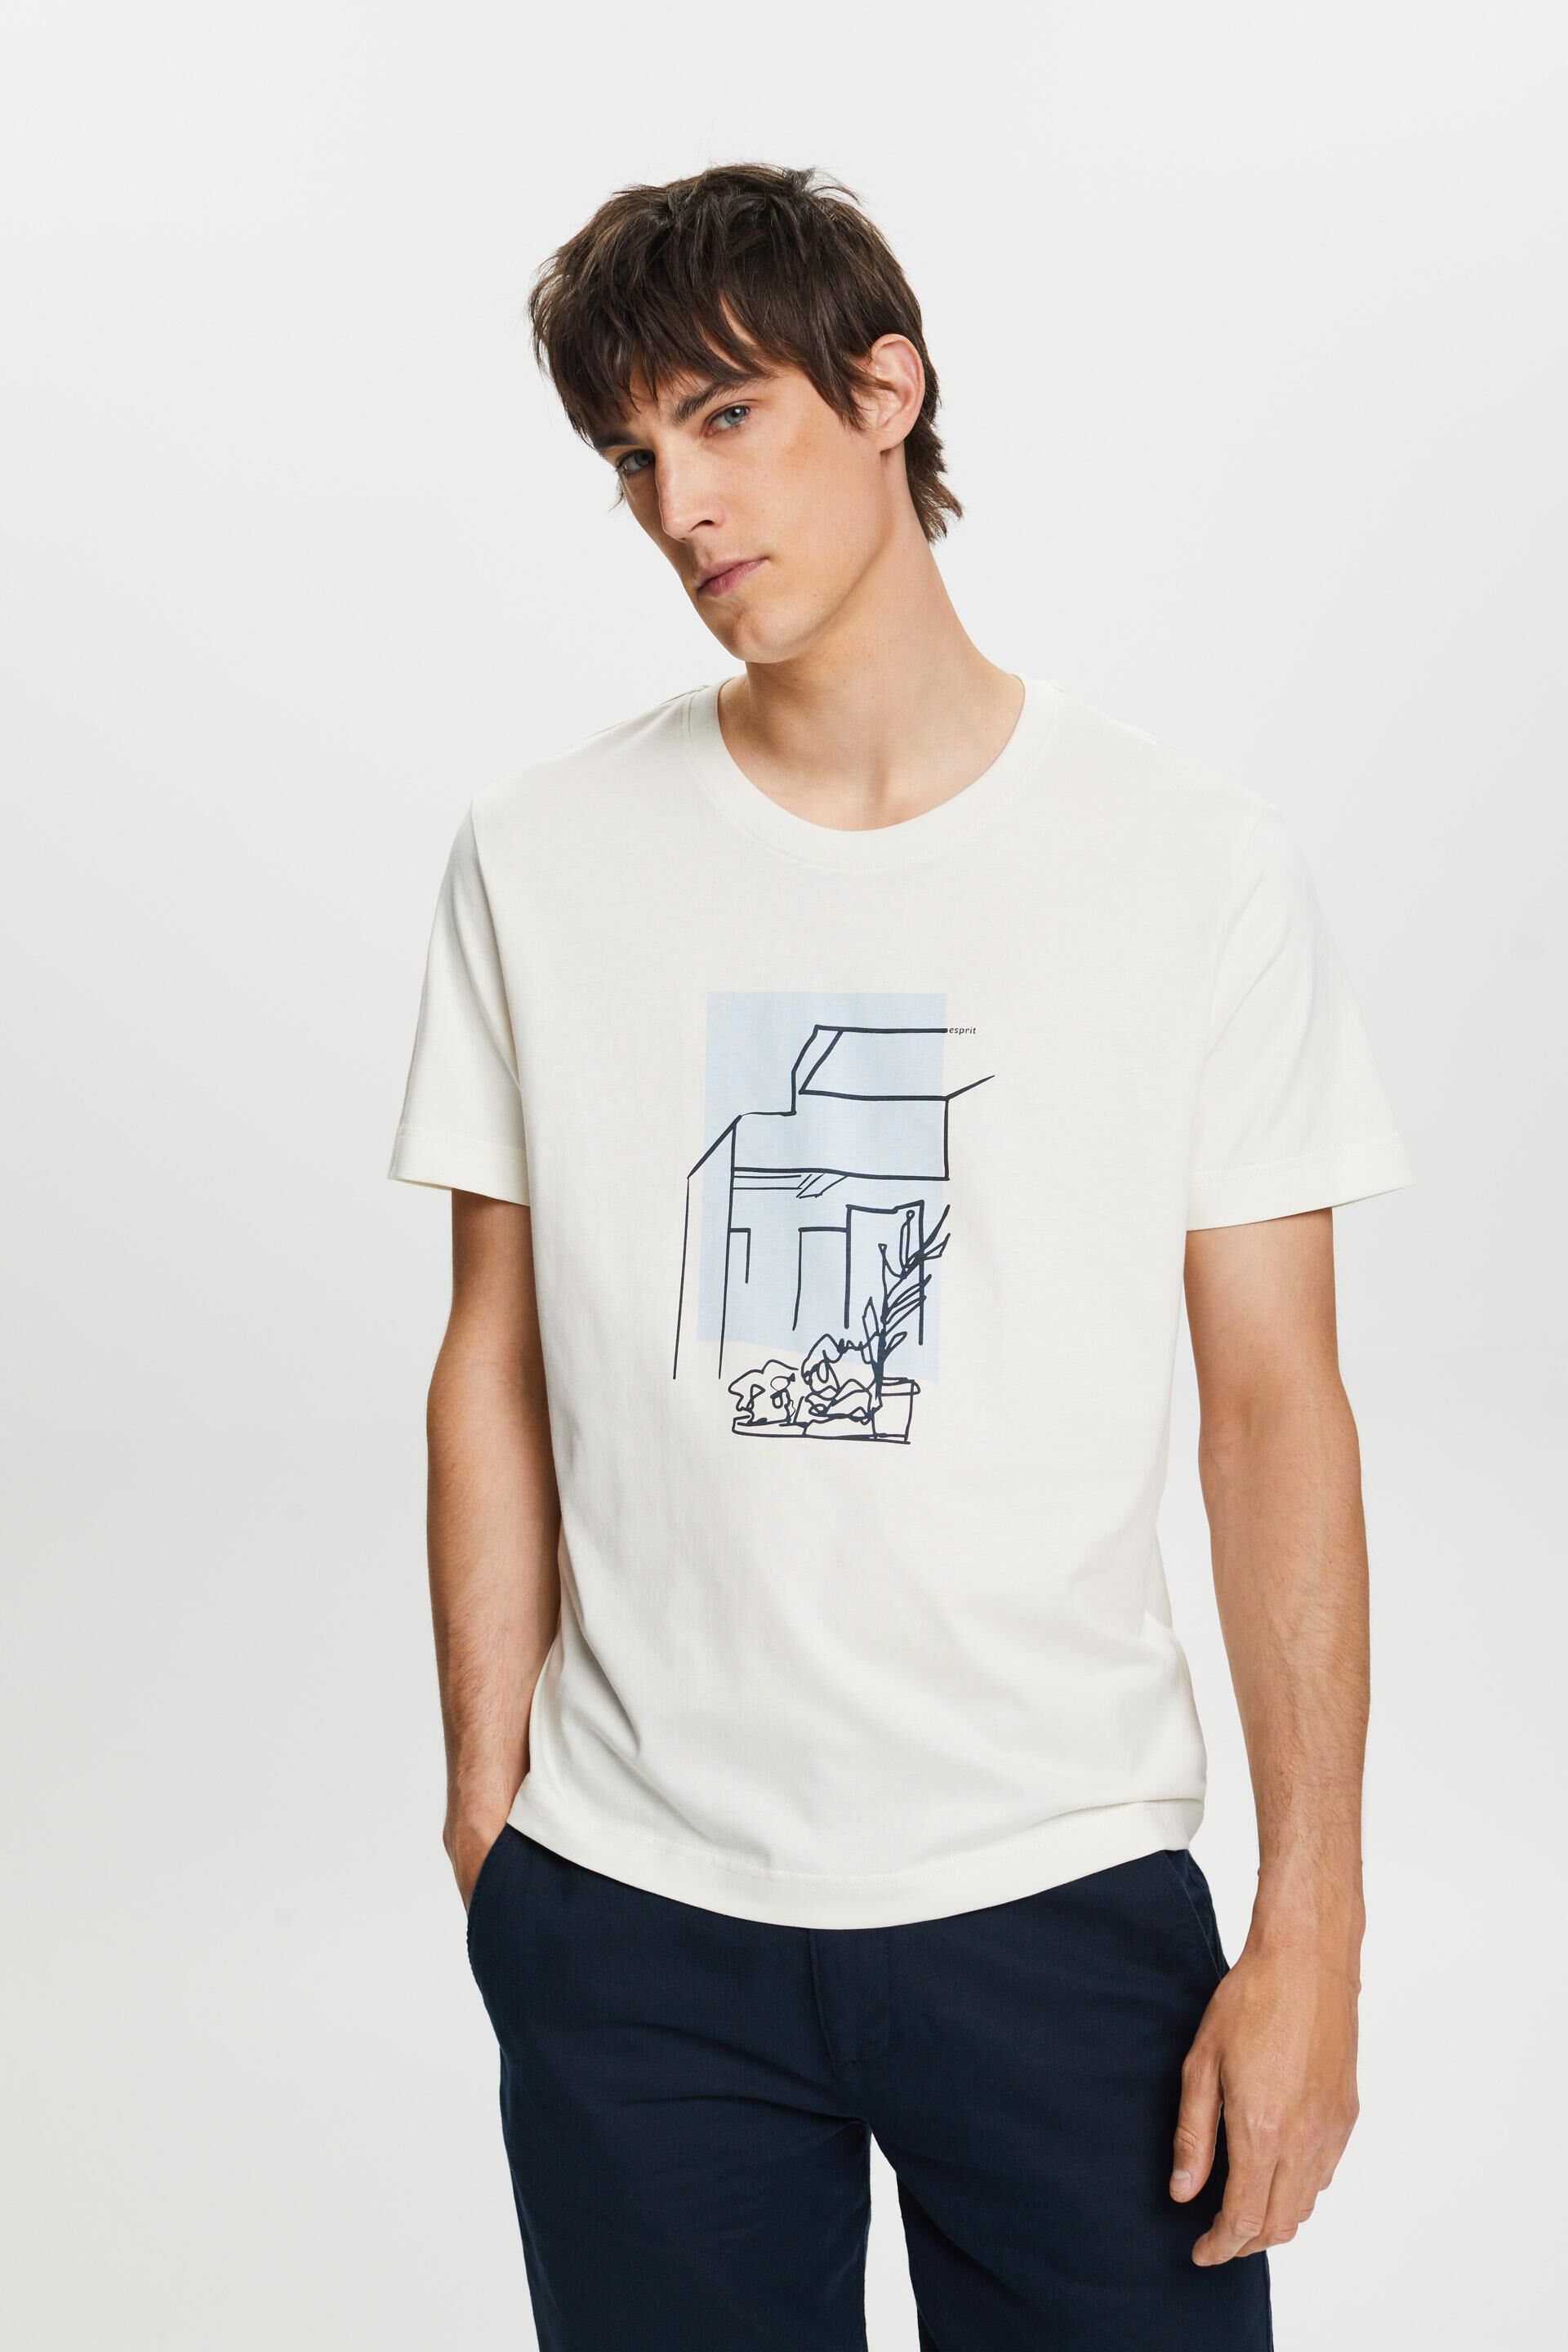 Esprit cotton 100% with print, T-shirt front